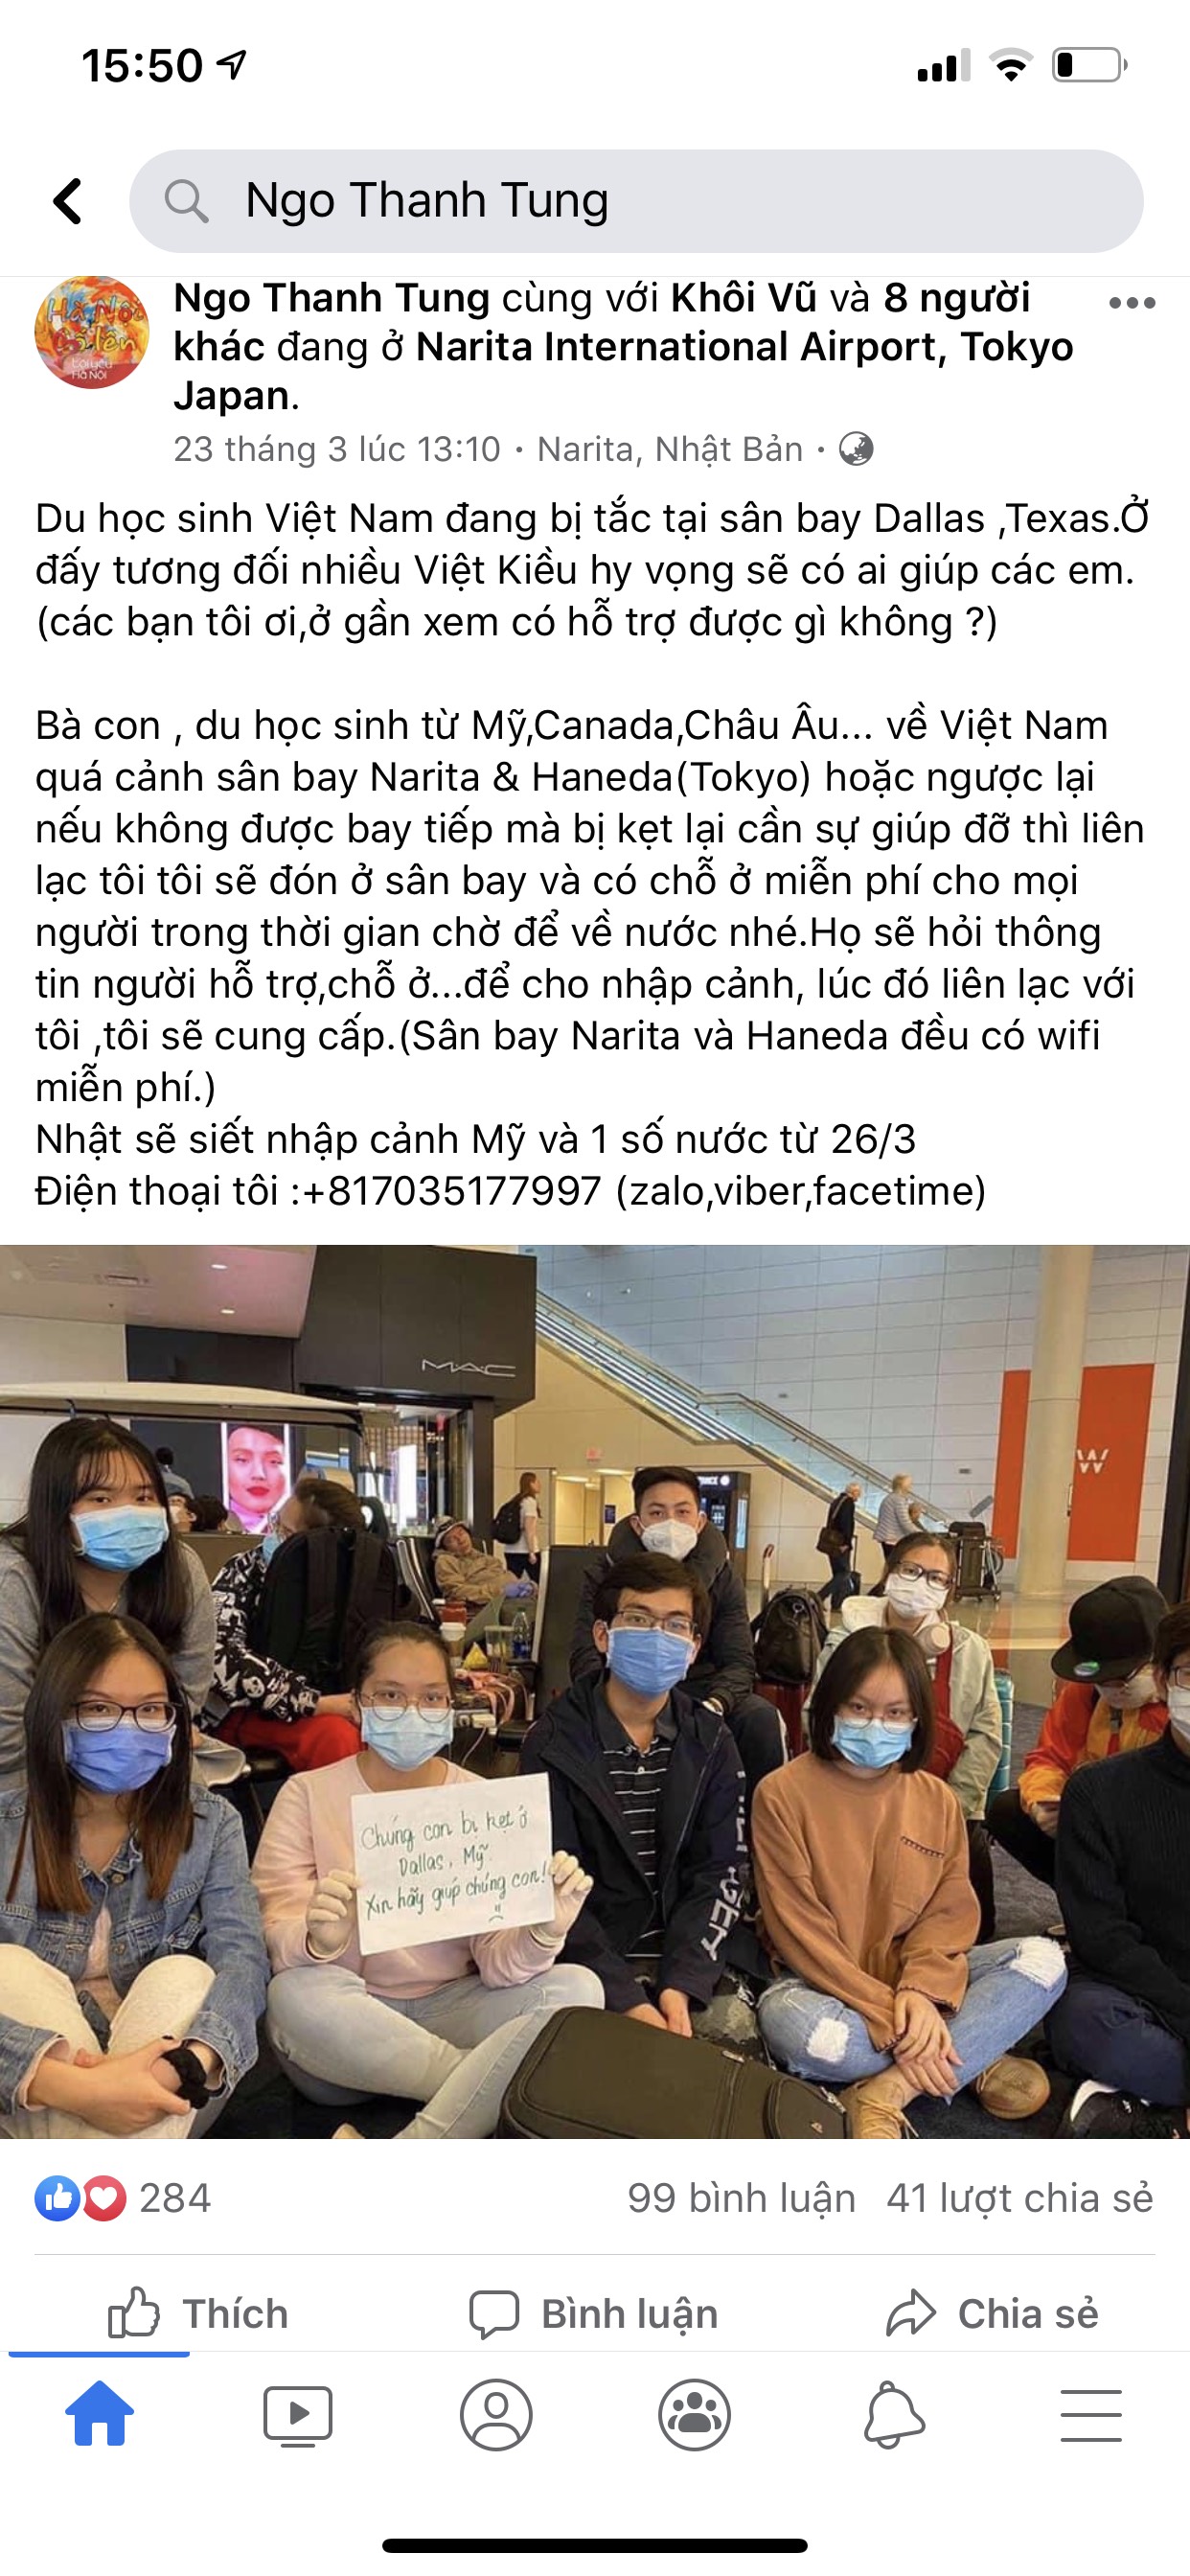 Anh Ngô Thanh Tùng đăng trên trang cá nhân lời đề nghị được hỗ trợ những người Việt mắc kẹt tại Nhật Bản do đại dịch COVID-19.